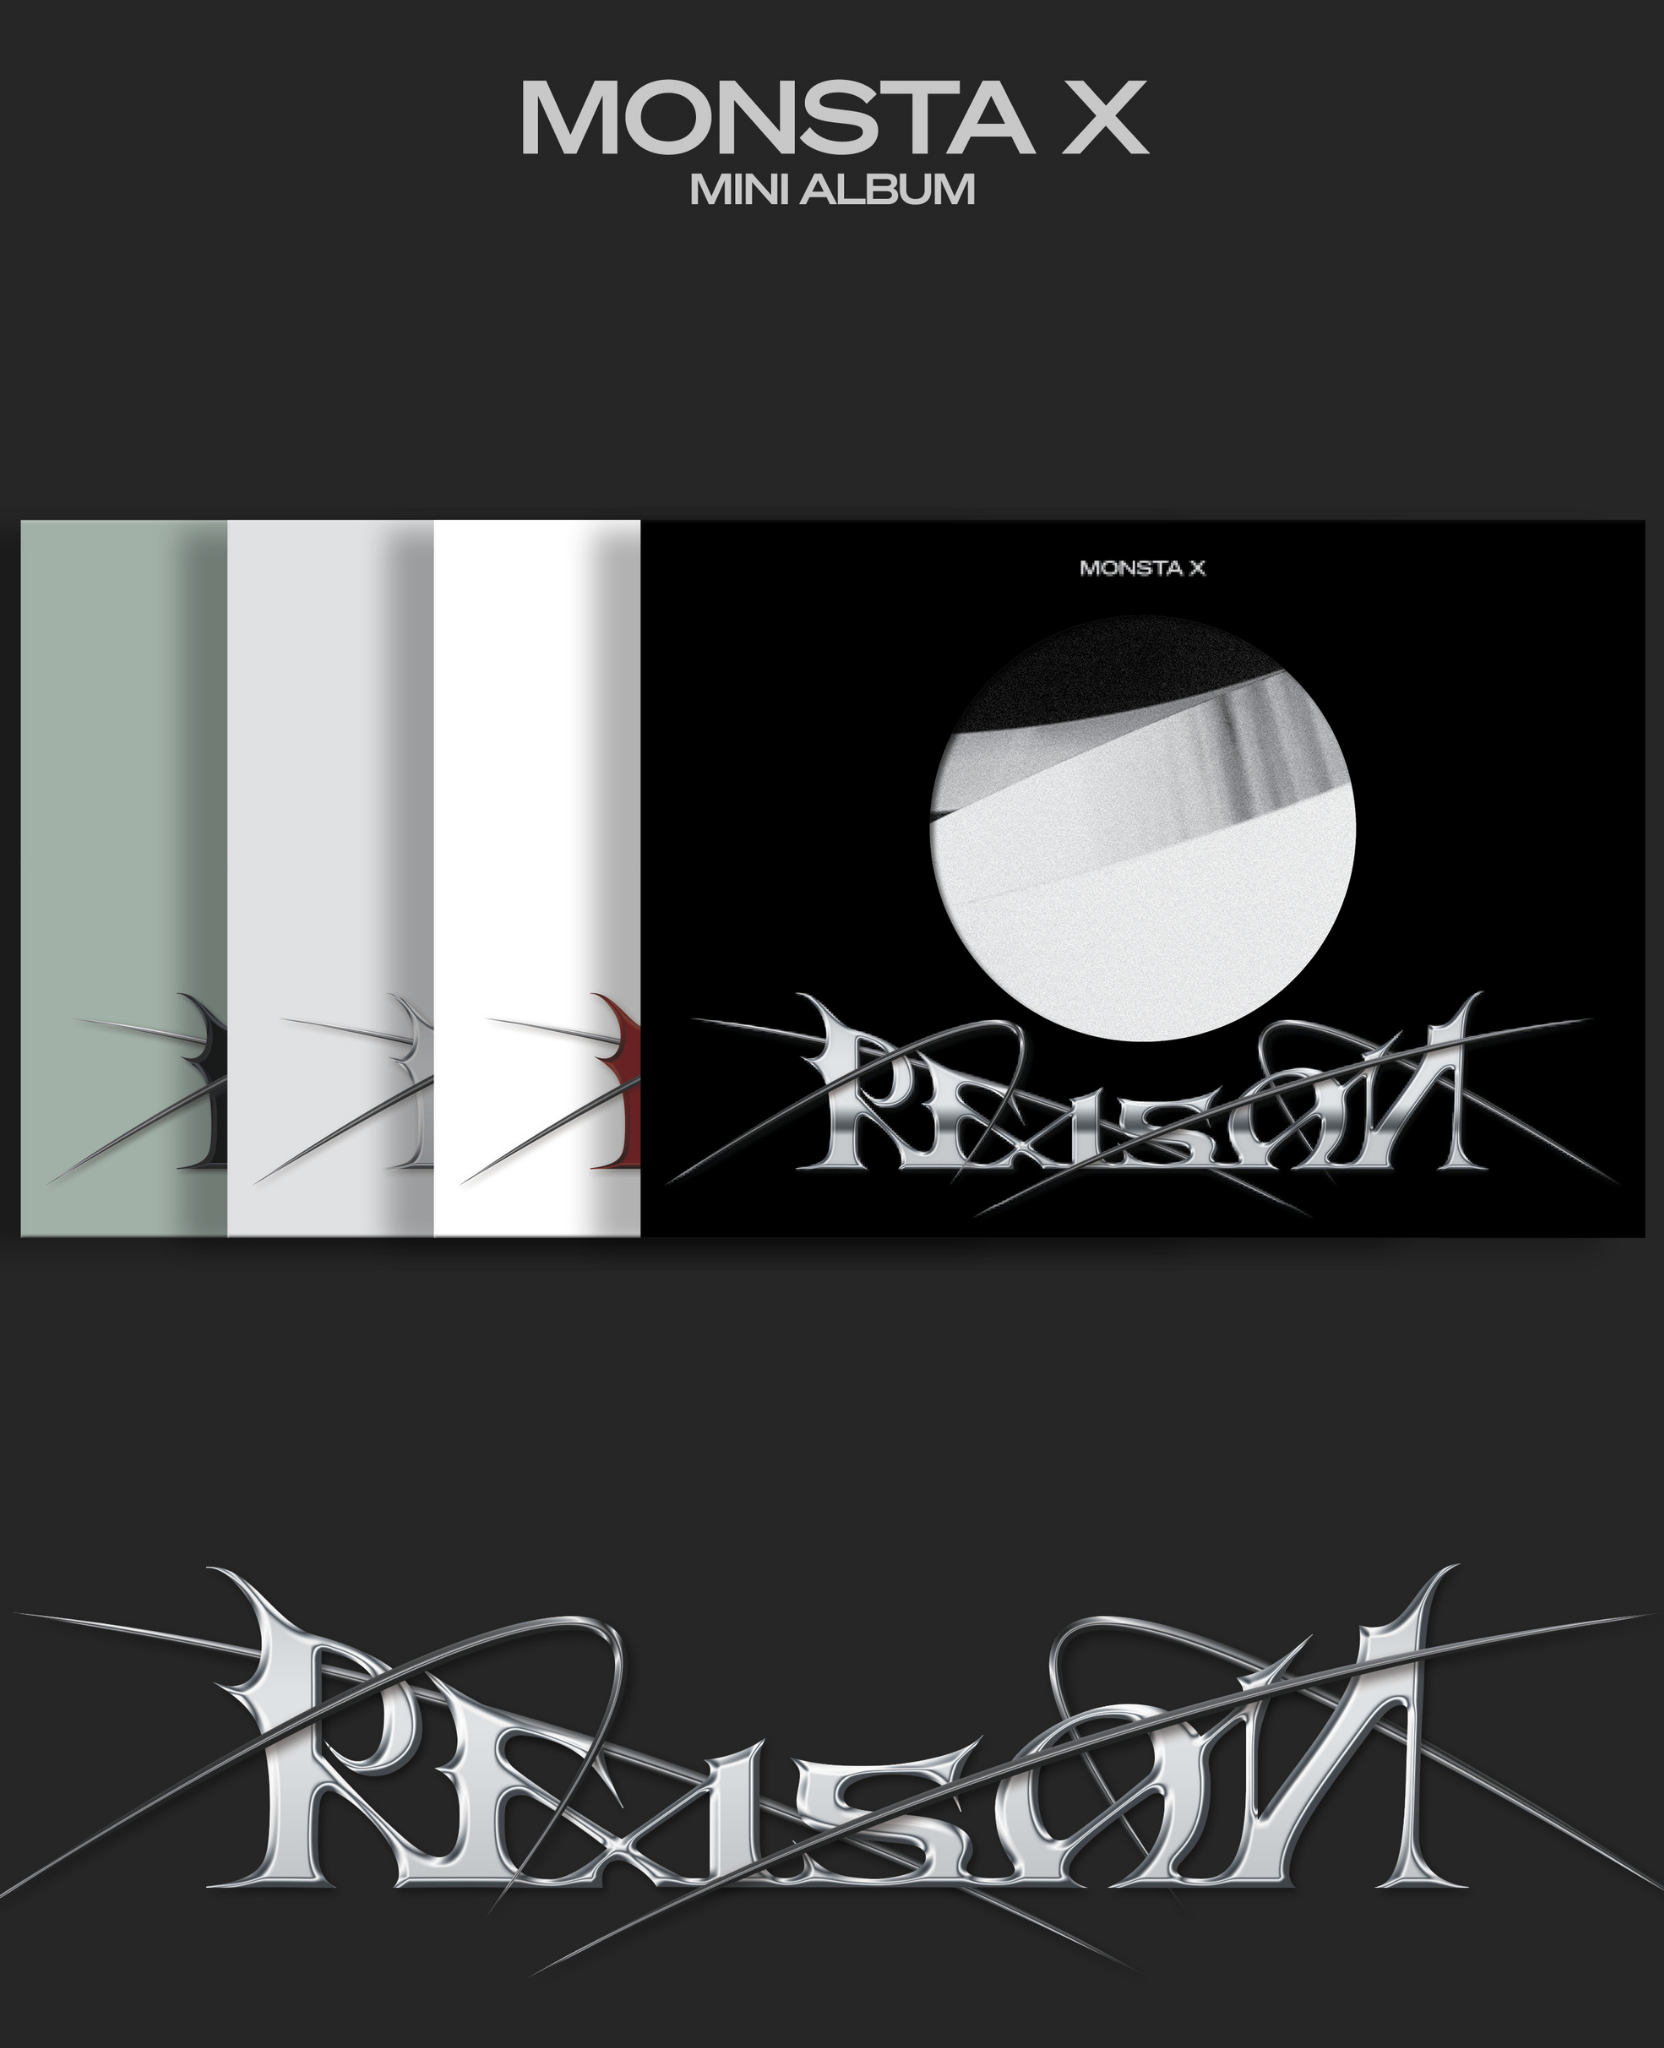 MONSTA X - 12th Mini Album - REASON (Ver. 1 / Ver. 2 / Ver. 3 / Ver. 4) 랜덤발송 - 4 Versionen (Random/Zufällige Auswahl) MONSTA X